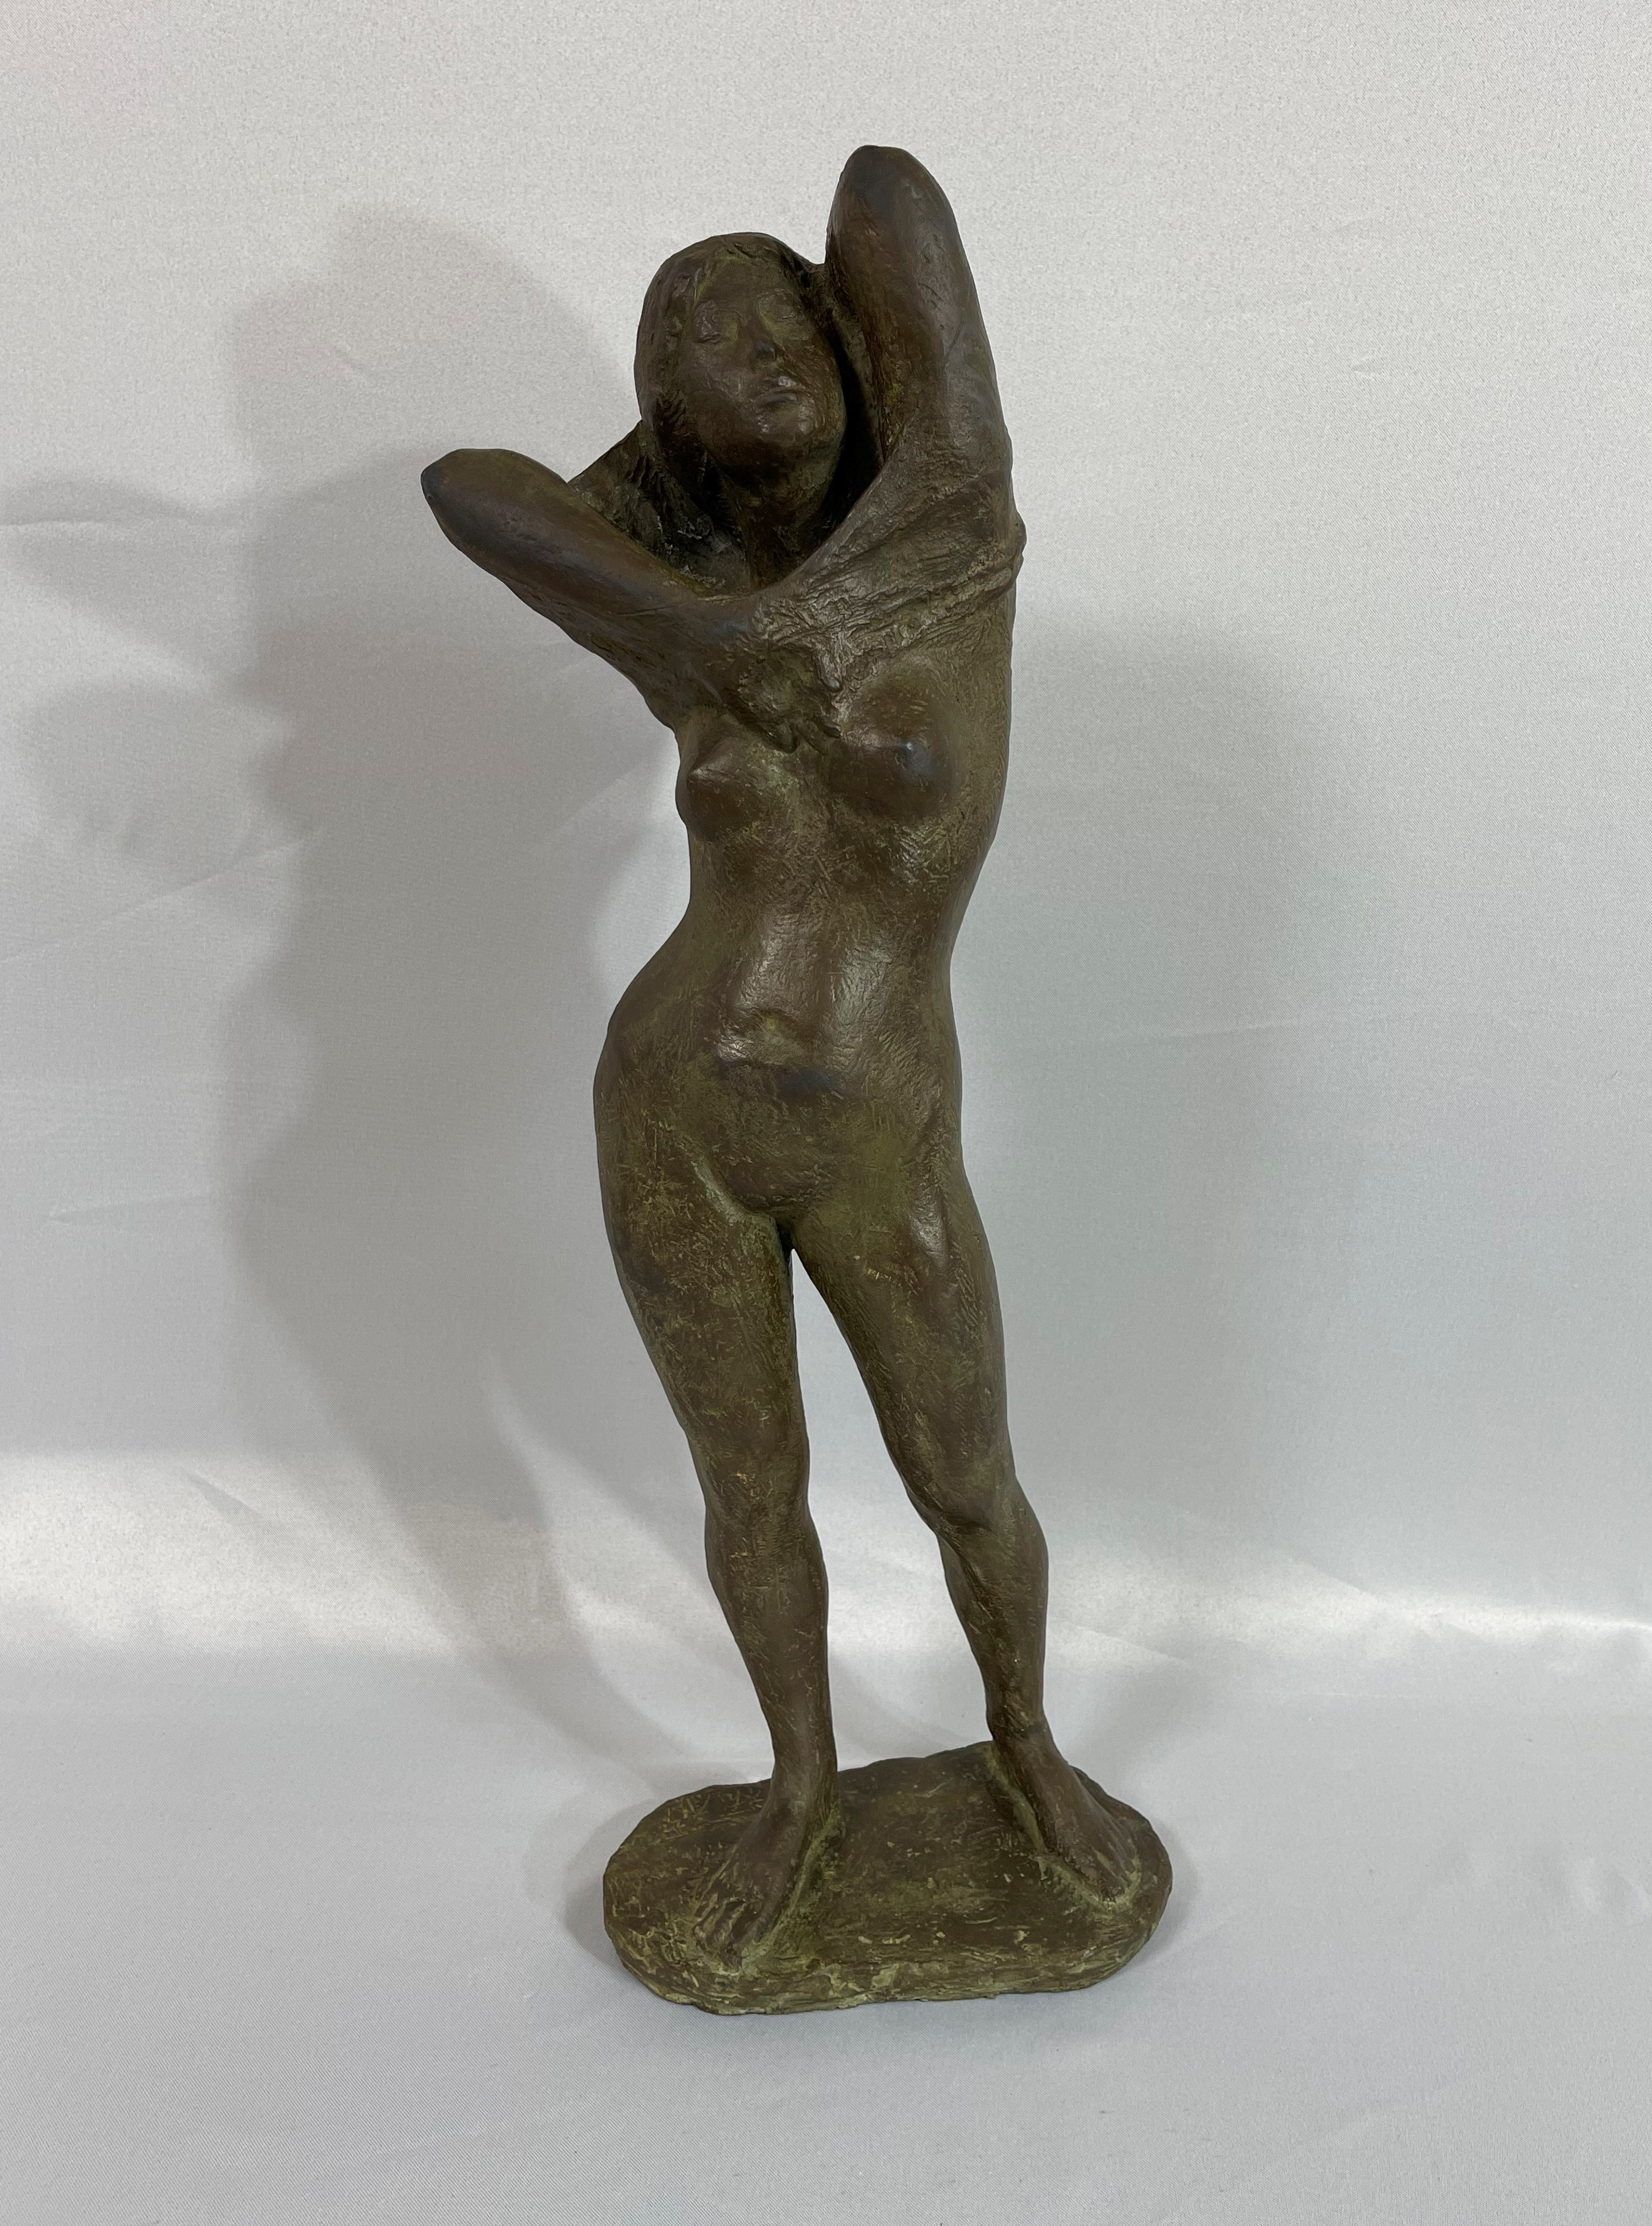 ブロンズ像 裸婦像 女性像 置物 TAE 昌銘 重さ約3.6kg M 3703